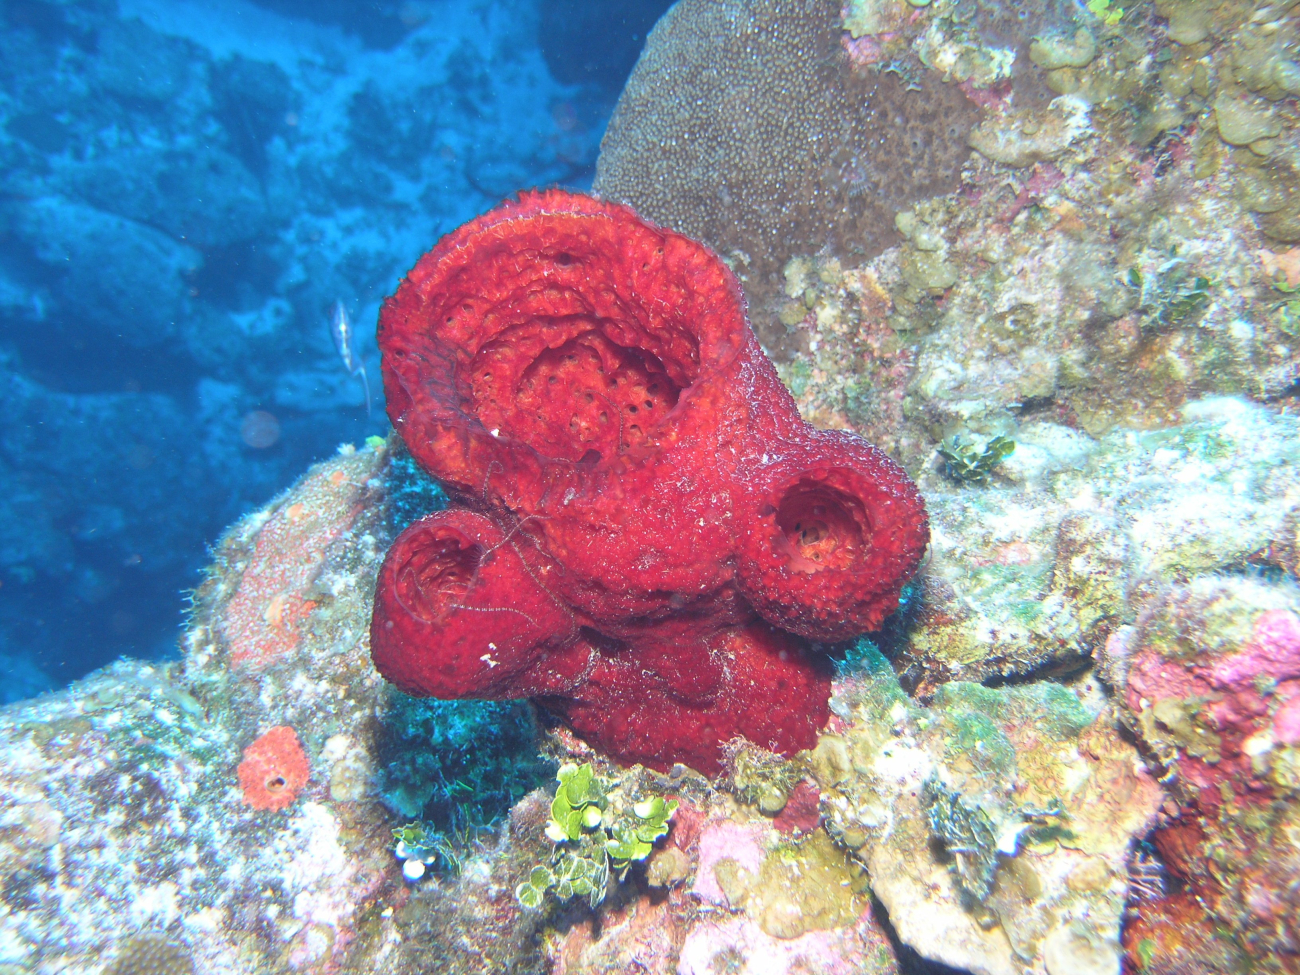 Red sponge